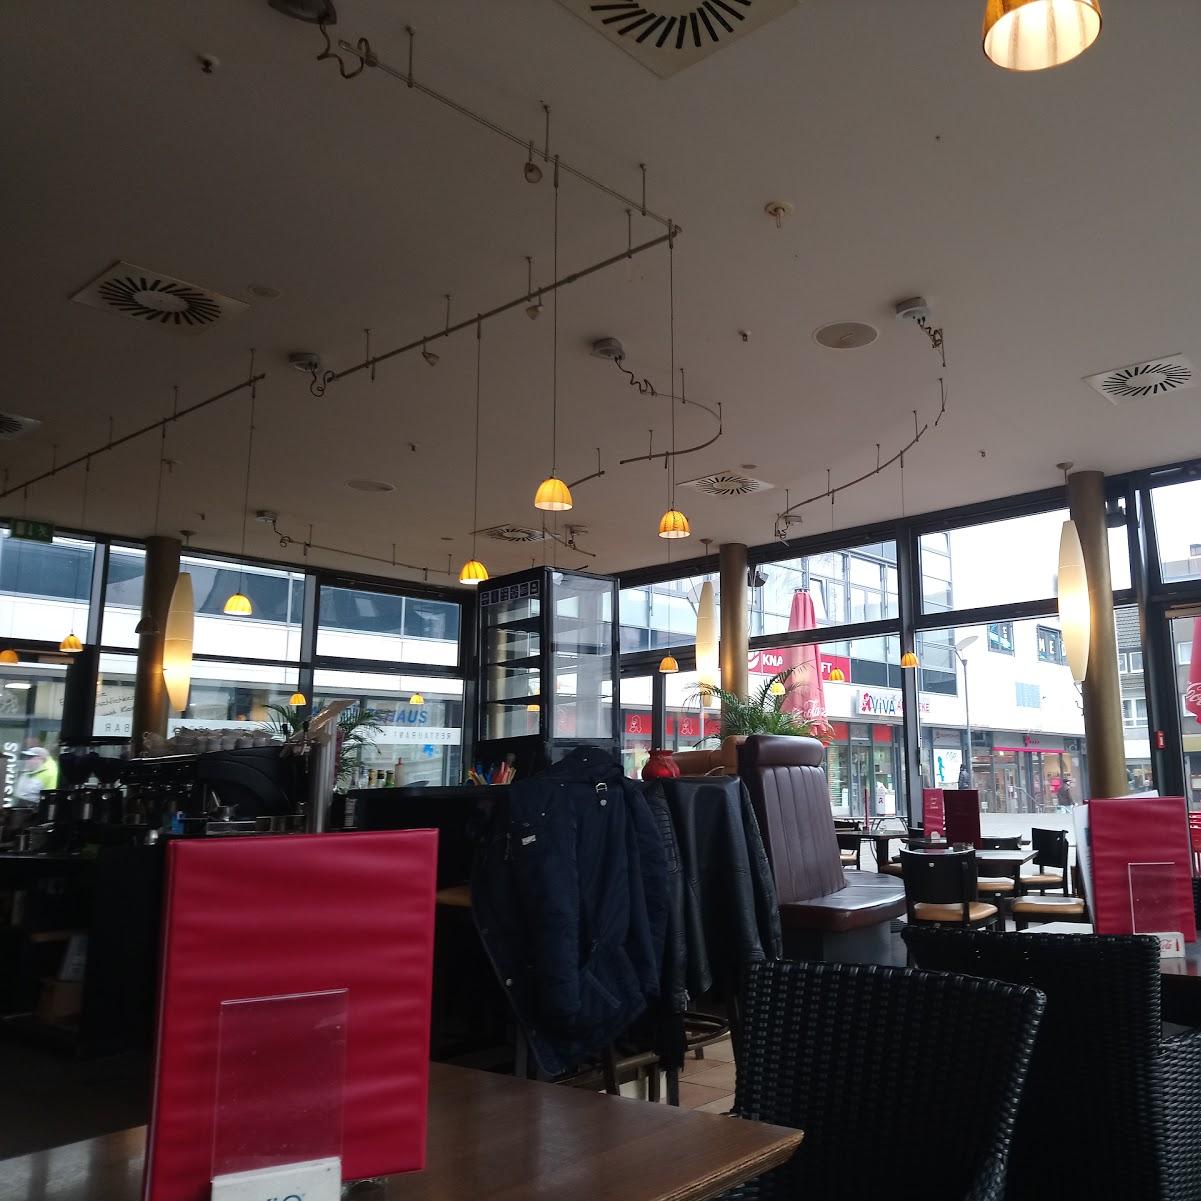 Restaurant "Rathaus Cafe" in Herten